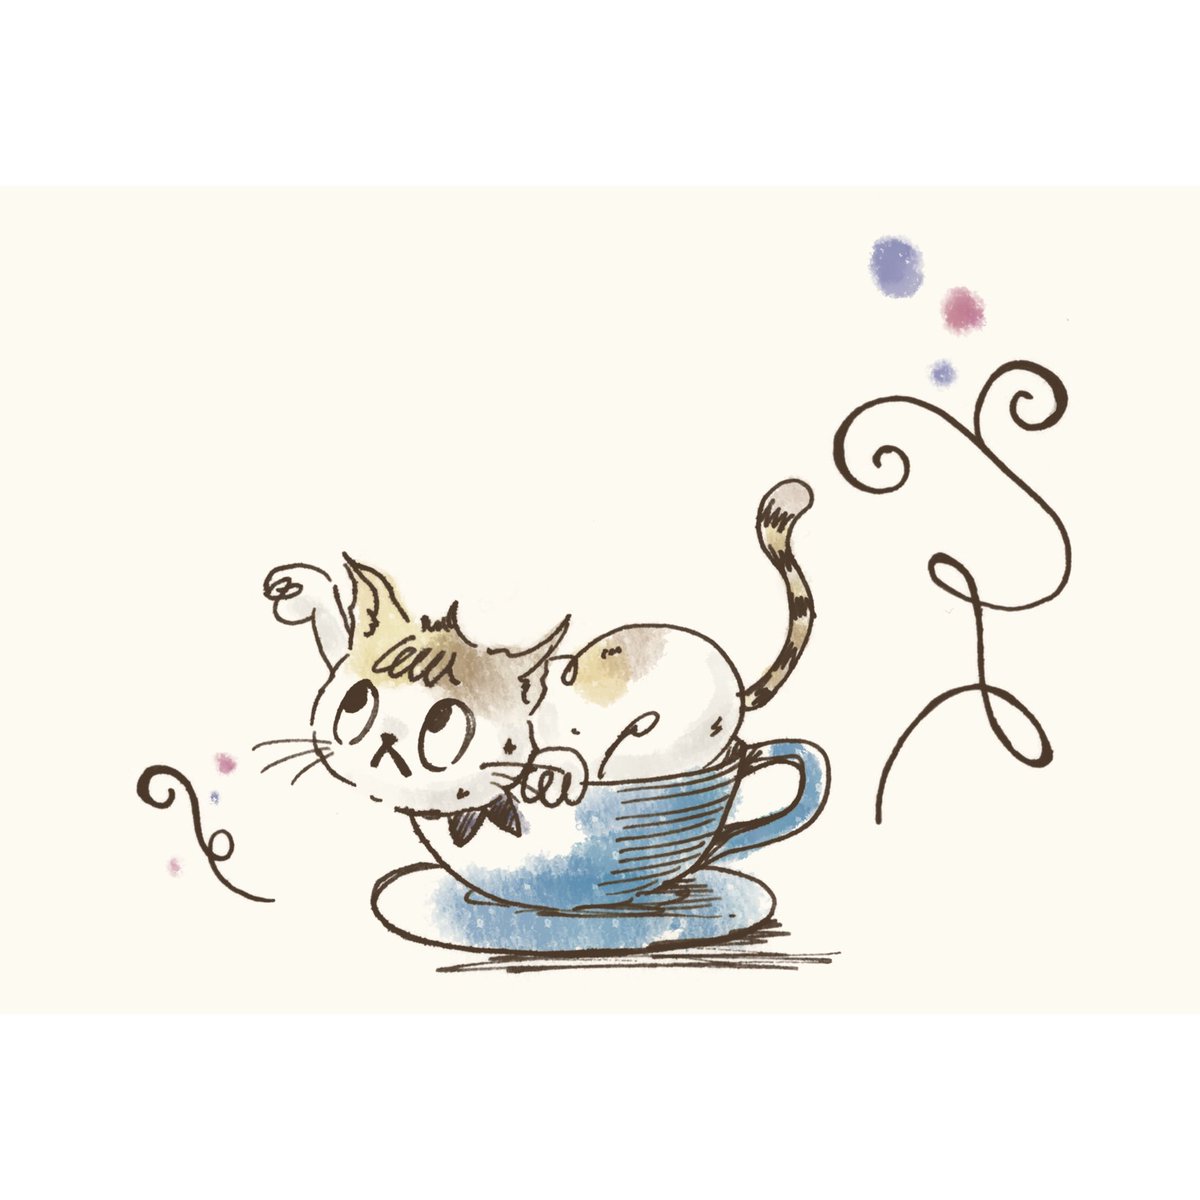 喫茶noizm 在 Twitter 上 猫と喫茶店イラスト7 カフェノートと作る為に描いてみました 万年筆によって滲みが違いますね タッチも少し変わっちゃってます ねこ 猫 Cat イラスト Illustration Postcard ポストカード 万年筆 手描き Coffee 珈琲